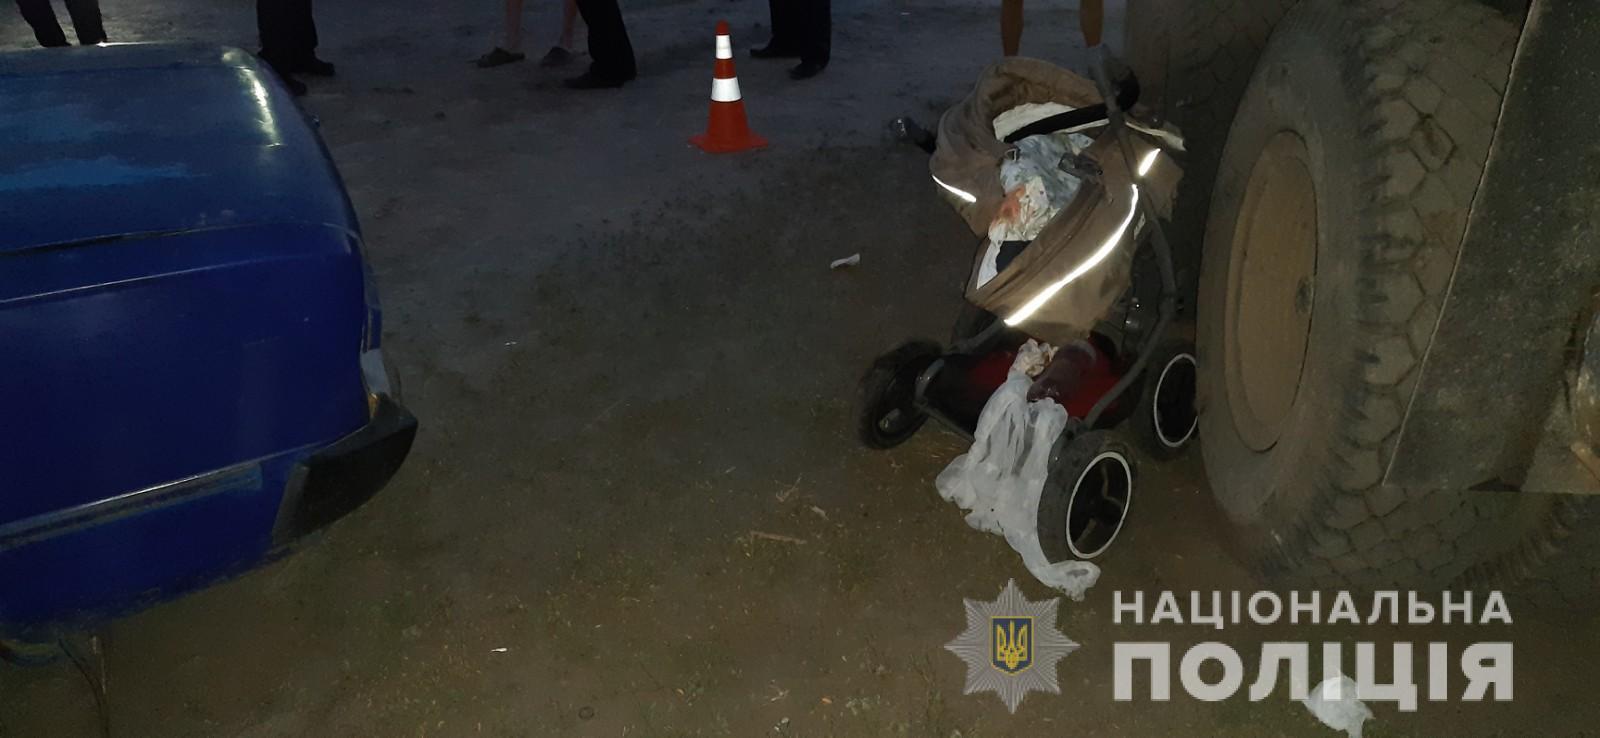 У Харкові в результаті ДТП загинуло немовля. Фото - сайт Нацполіціі в Харківській області